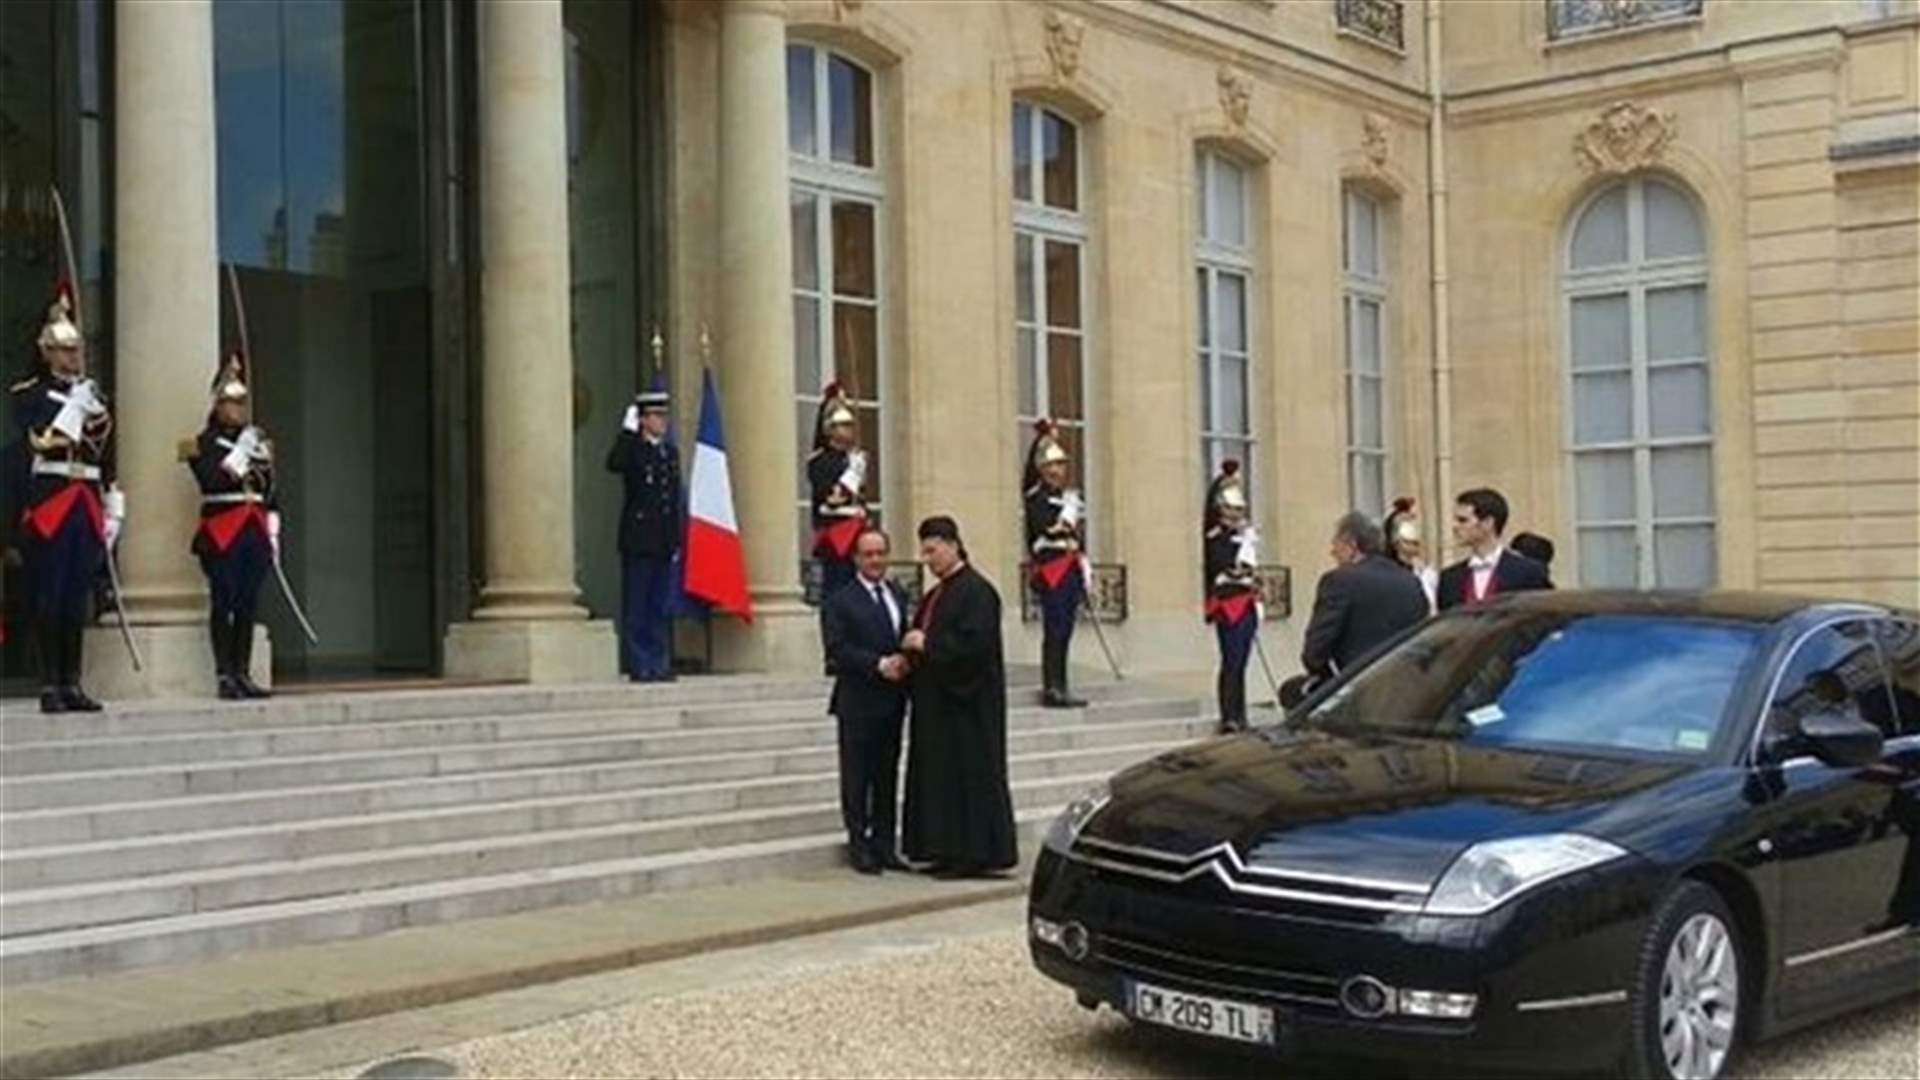 الراعي في الاليزيه.....فرنسا مستعدة للمساعدة في انتخاب رئيس لبناني